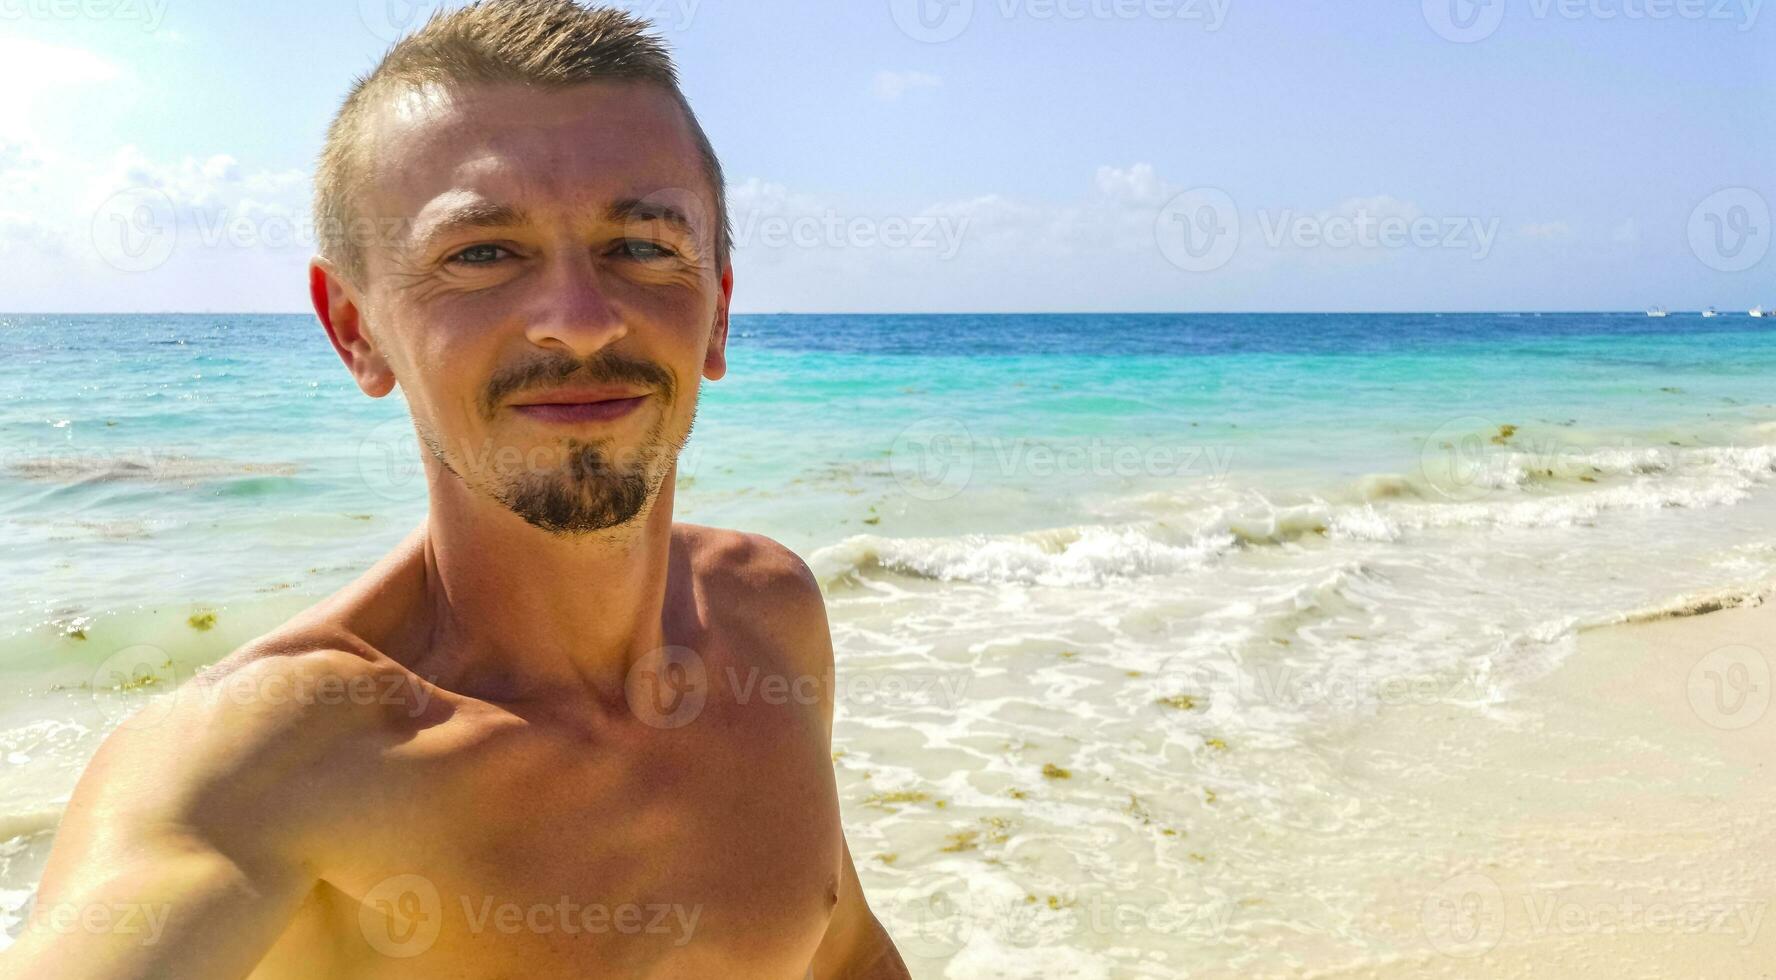 mannetje toerist op reis Mens nemen selfie playa del carmen Mexico. foto